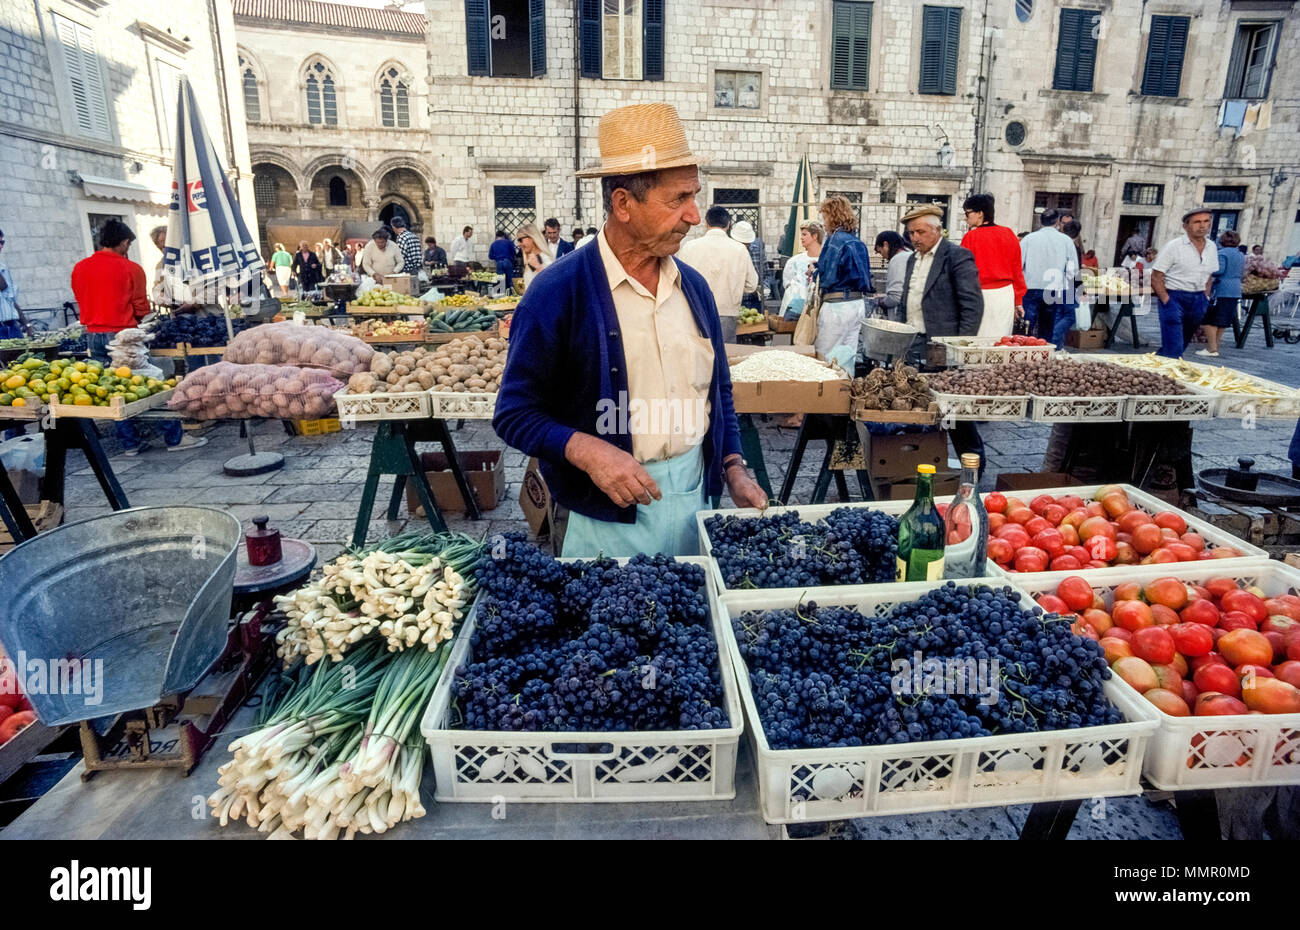 Les fruits et légumes frais vendus par les agriculteurs locaux sont en vedette dans le marché en plein air mis en place tous les jours en place Gundulic dans la vieille ville historique de Dubrovnik, une destination touristique populaire qui est en Croatie le long de la côte dalmate de la mer Adriatique. Une fois partie de l'ex-Yougoslavie, la ville fortifiée est un site du patrimoine mondial de L'et a été réparé depuis souffrant des dommages considérables au cours des années 1990 pour la guerre d'indépendance croate. Banque D'Images